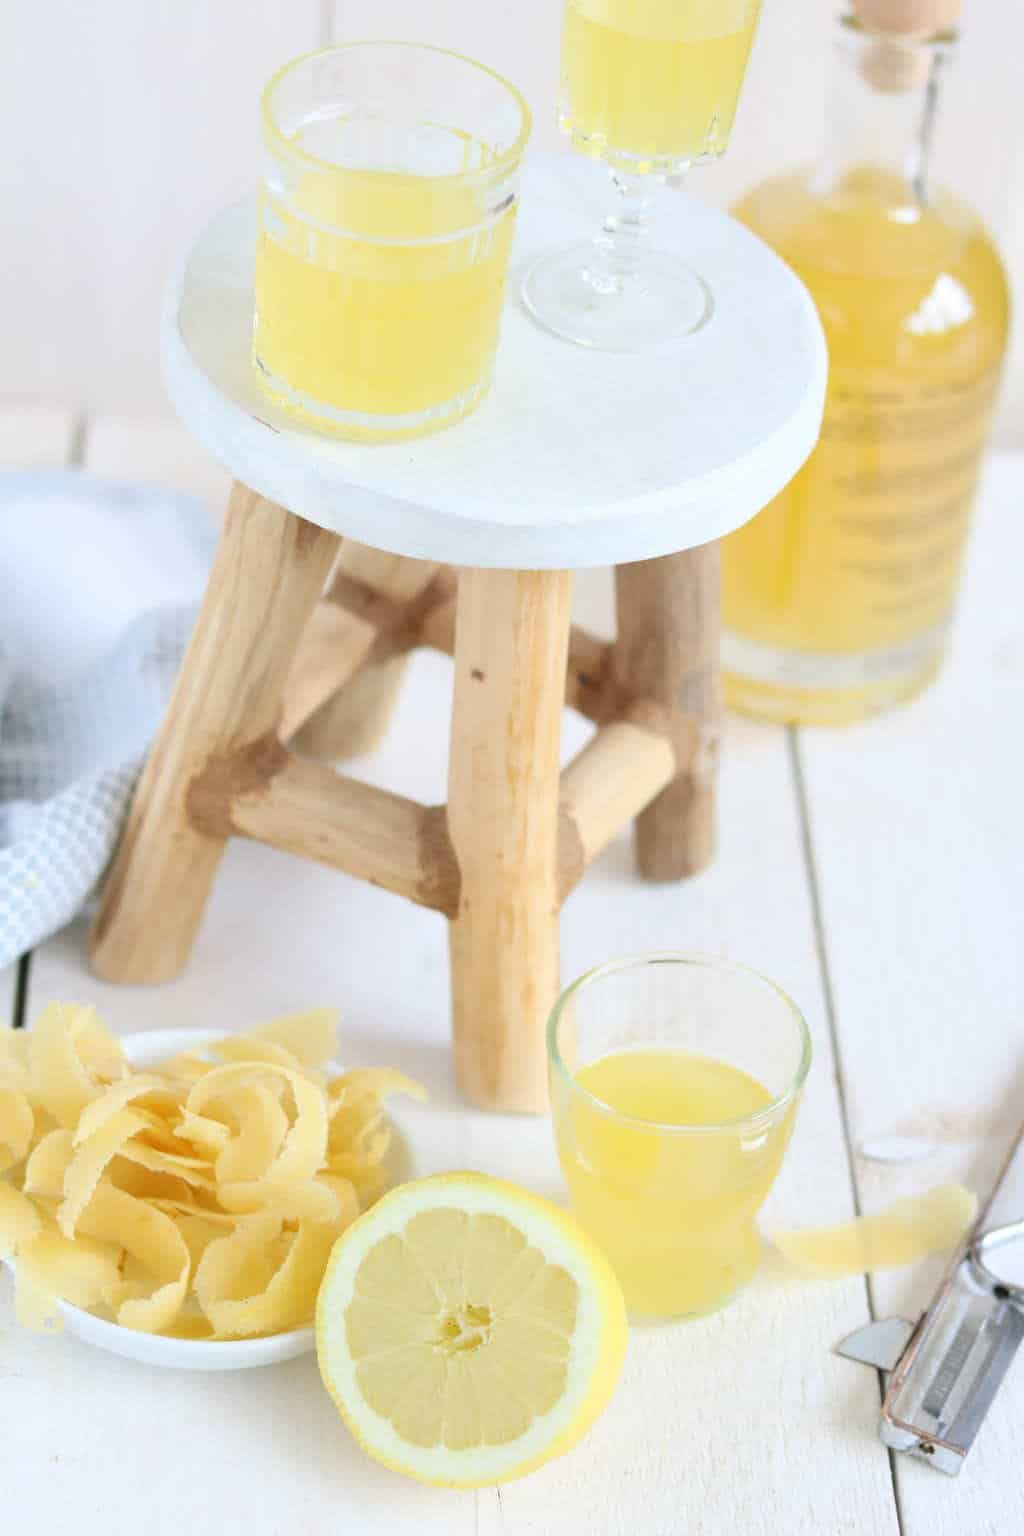 Zelf limoncello maken met alchohol, citroenen en suiker. Je eigen likeur maken is niet moeilijk. Je hebt alleen geduld nodig.